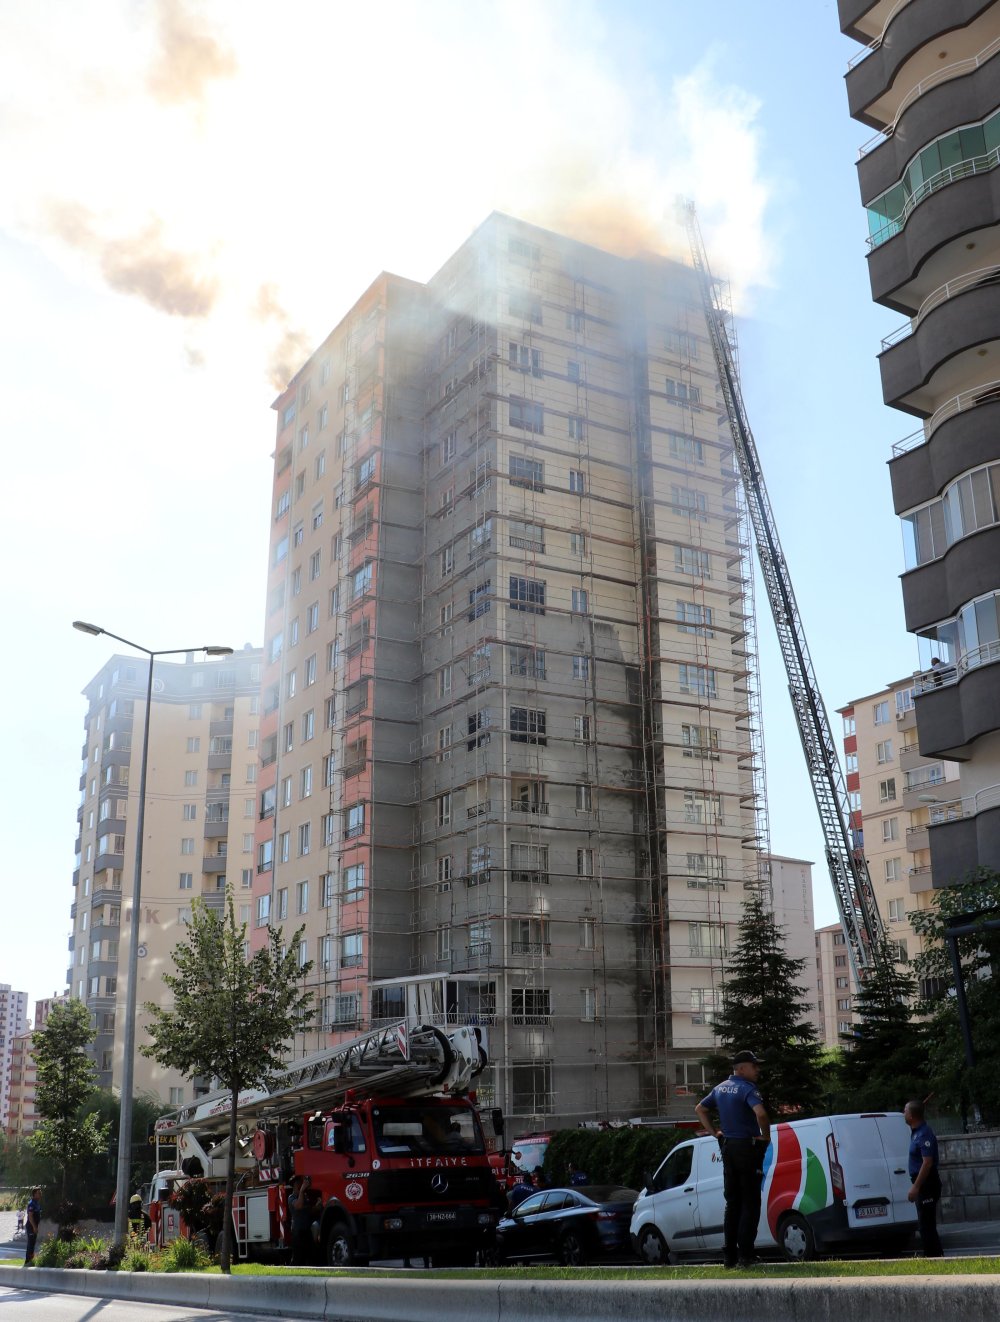 13 katlı binada yangın: 1 kişi öldü